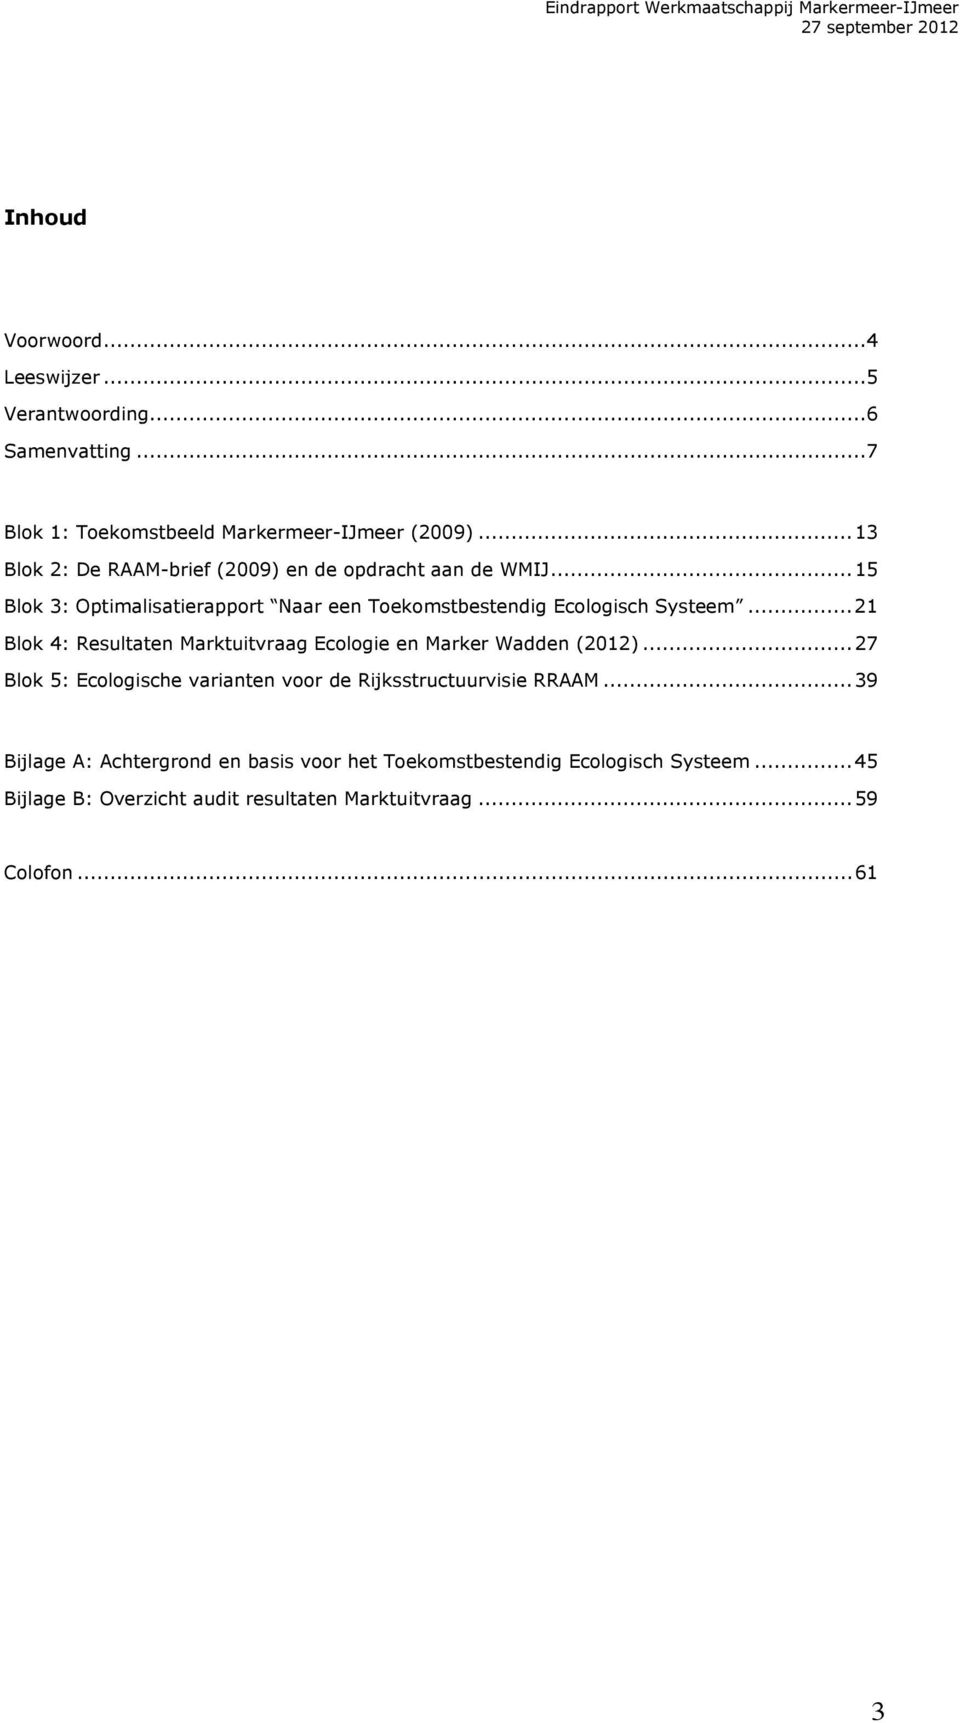 ..21 Blok 4: Resultaten Marktuitvraag Ecologie en Marker Wadden (2012)...27 Blok 5: Ecologische varianten voor de Rijksstructuurvisie RRAAM.